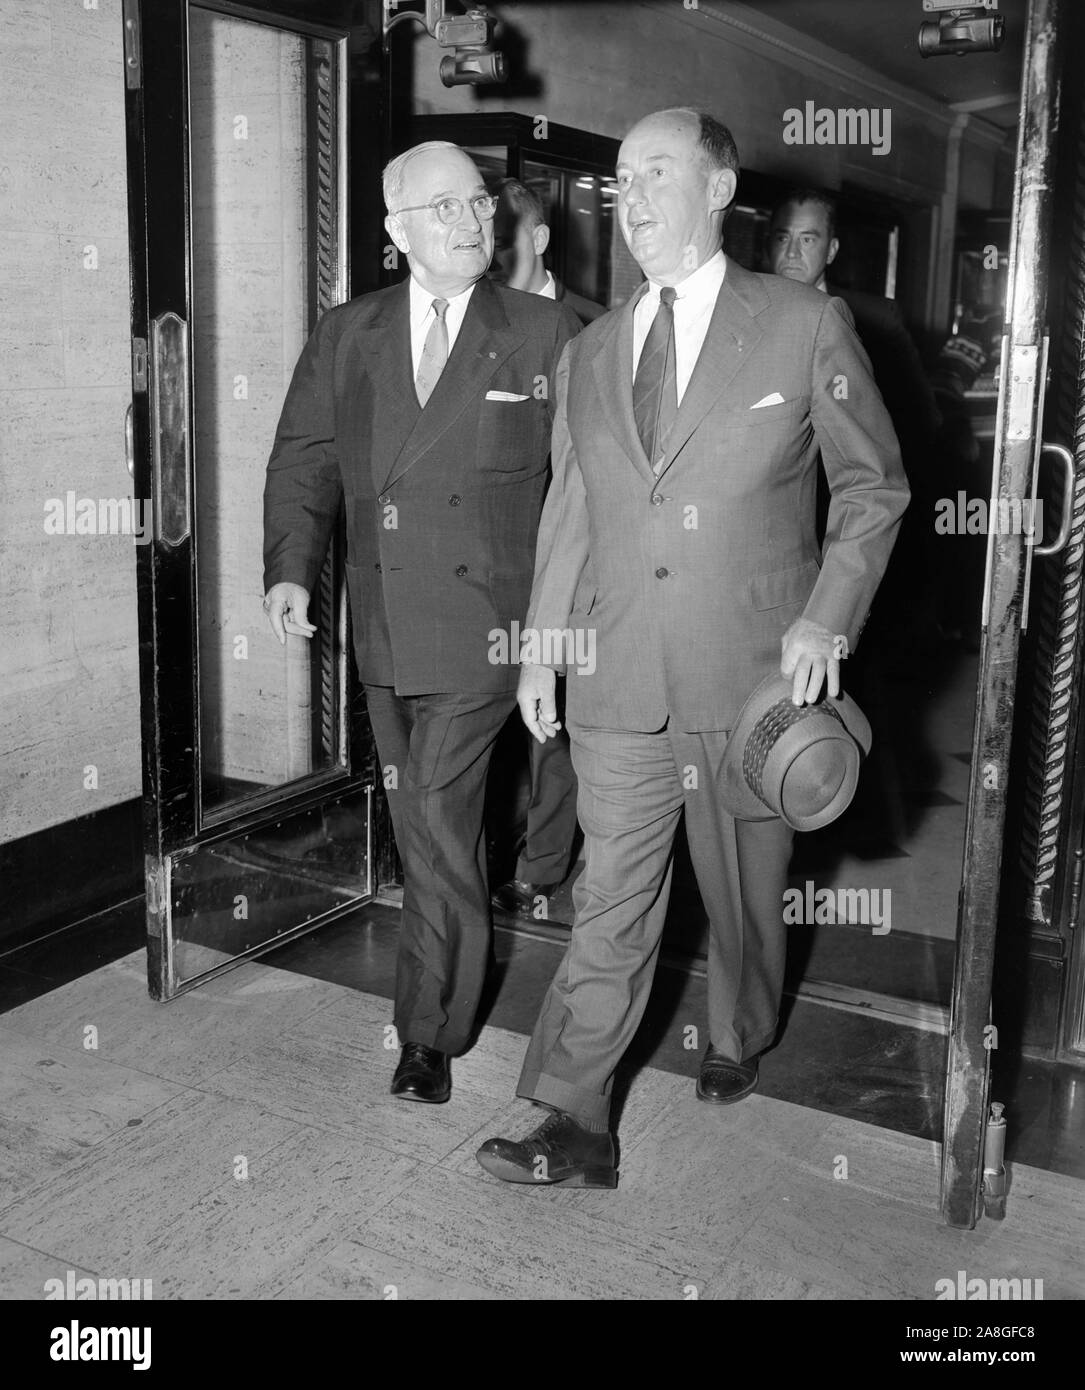 L'ancien président Harry Truman quitte un hôtel de Chicago porte avec Adlai Stevenson candidat à l'élection présidentielle en 1956. Banque D'Images